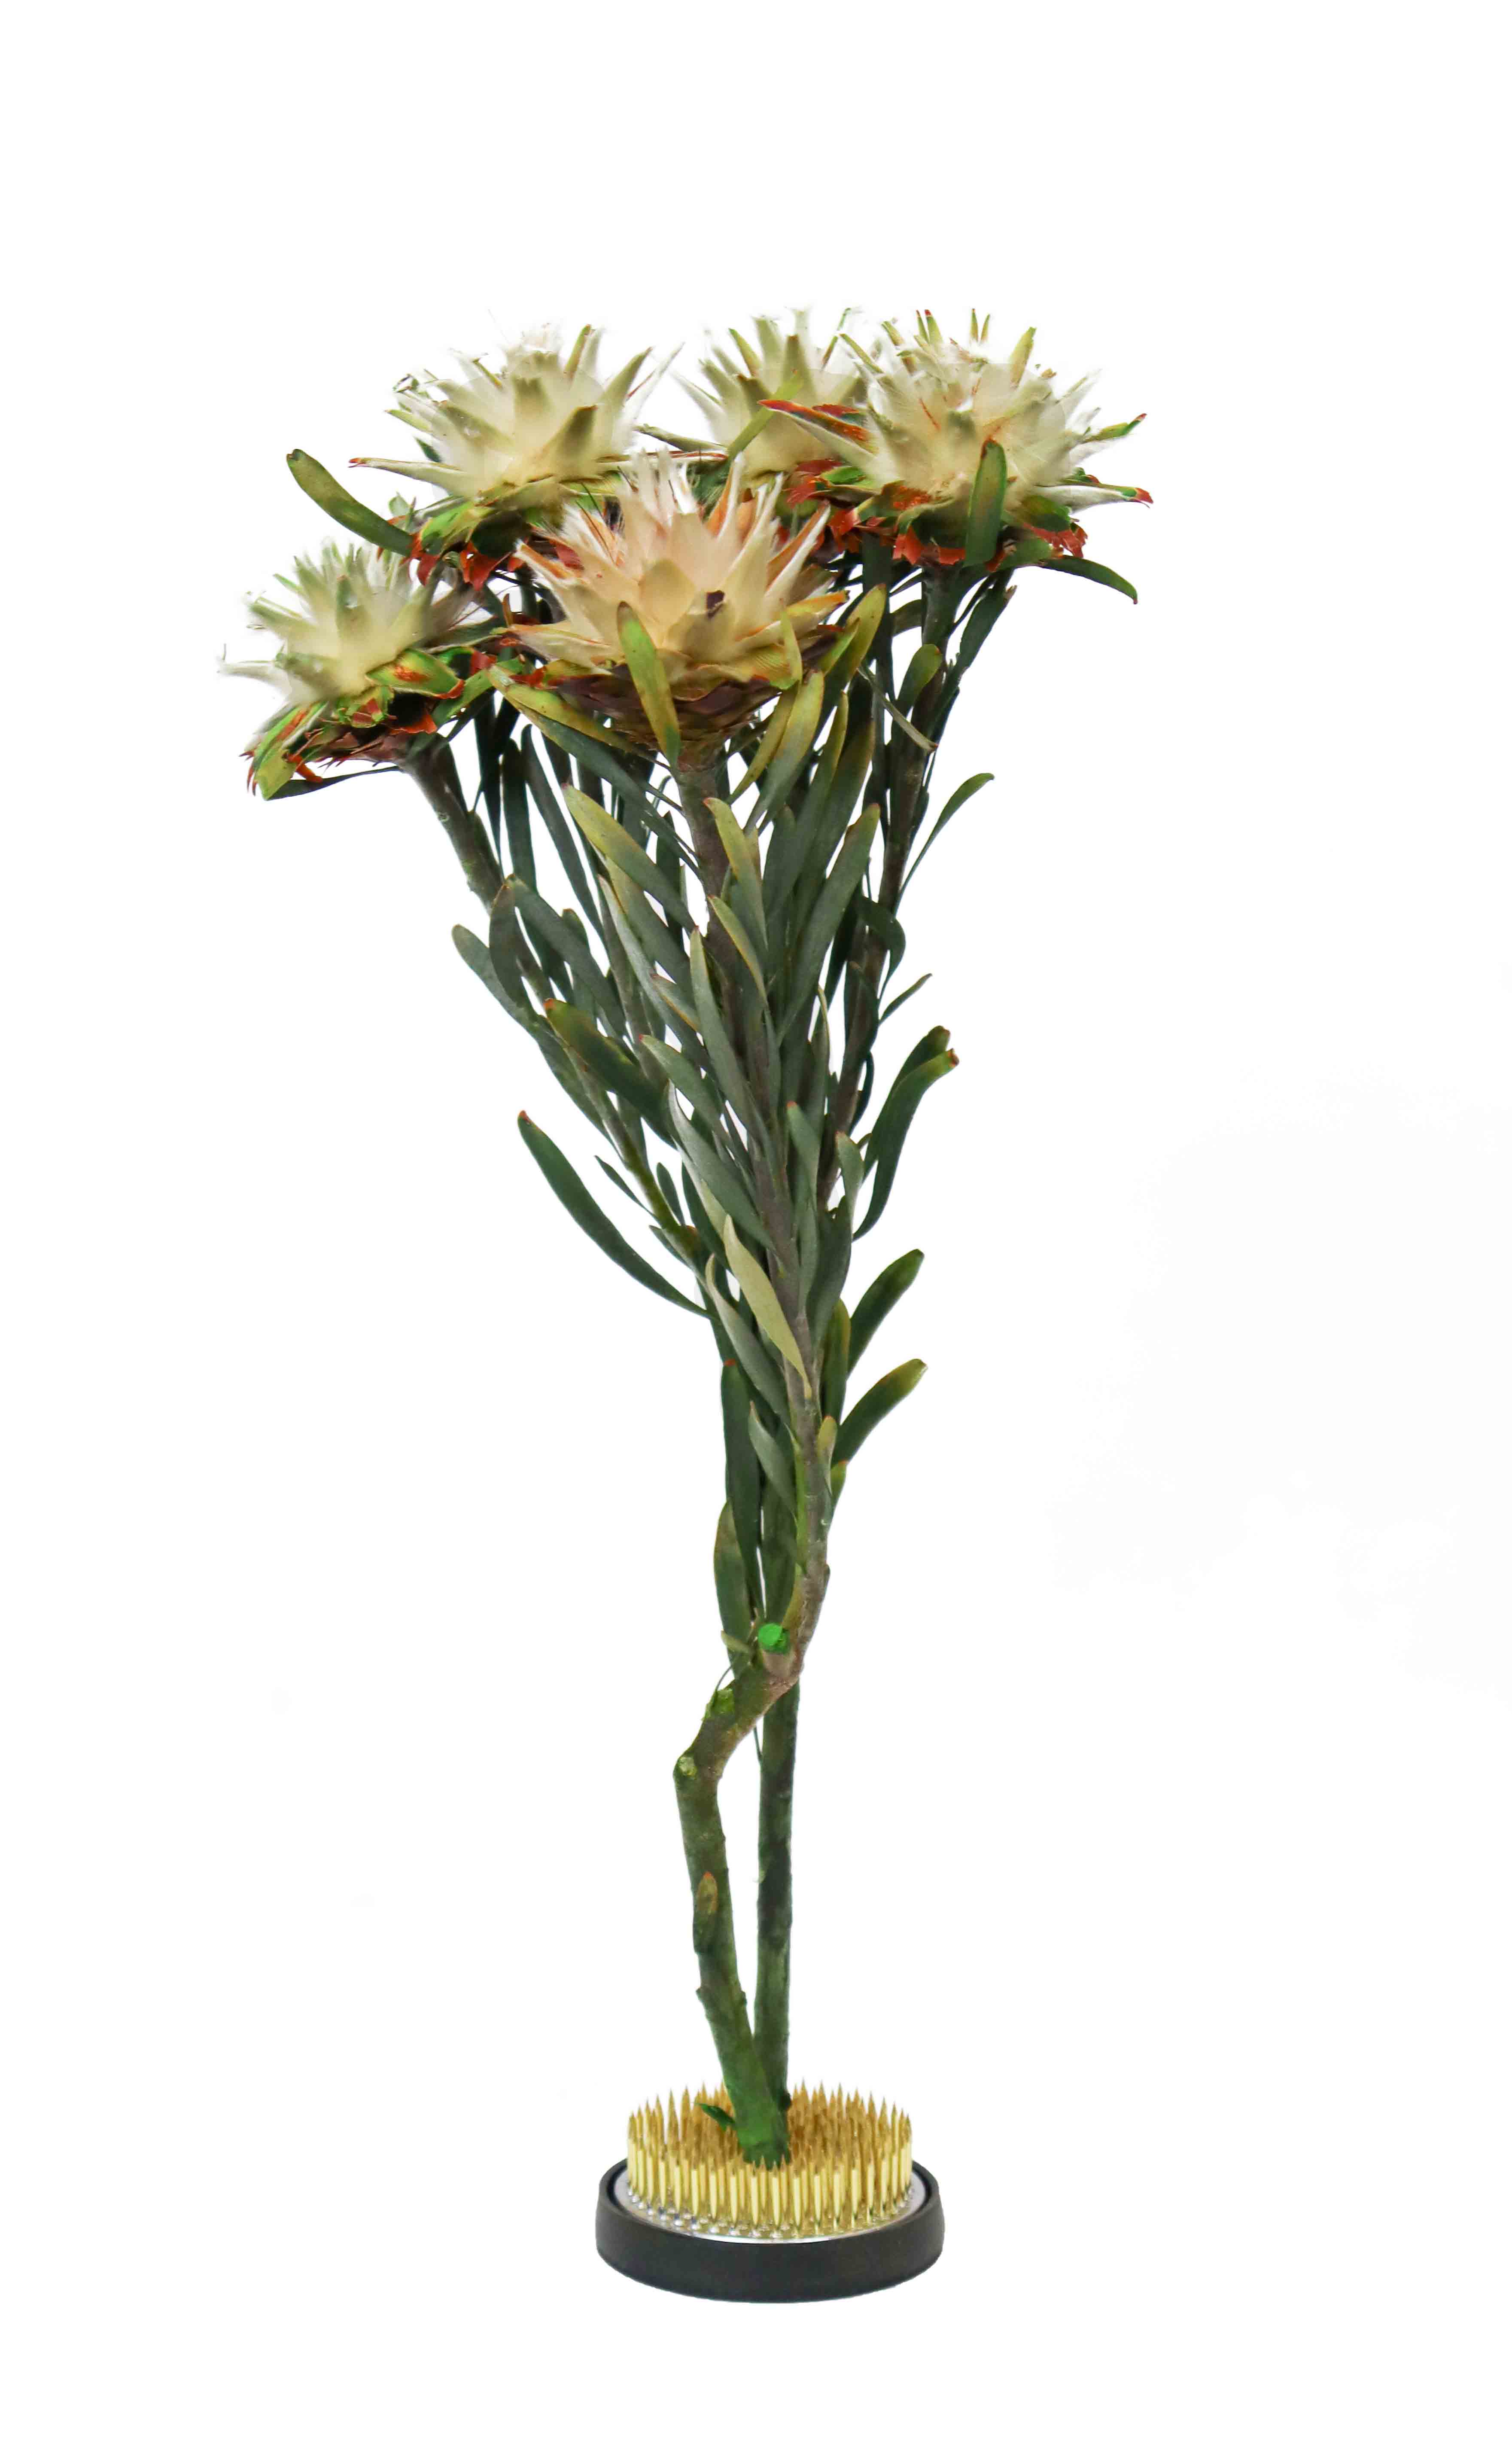 Cuemars Dried Flowers - Dried Plumosum Female Preserved Green Bunch